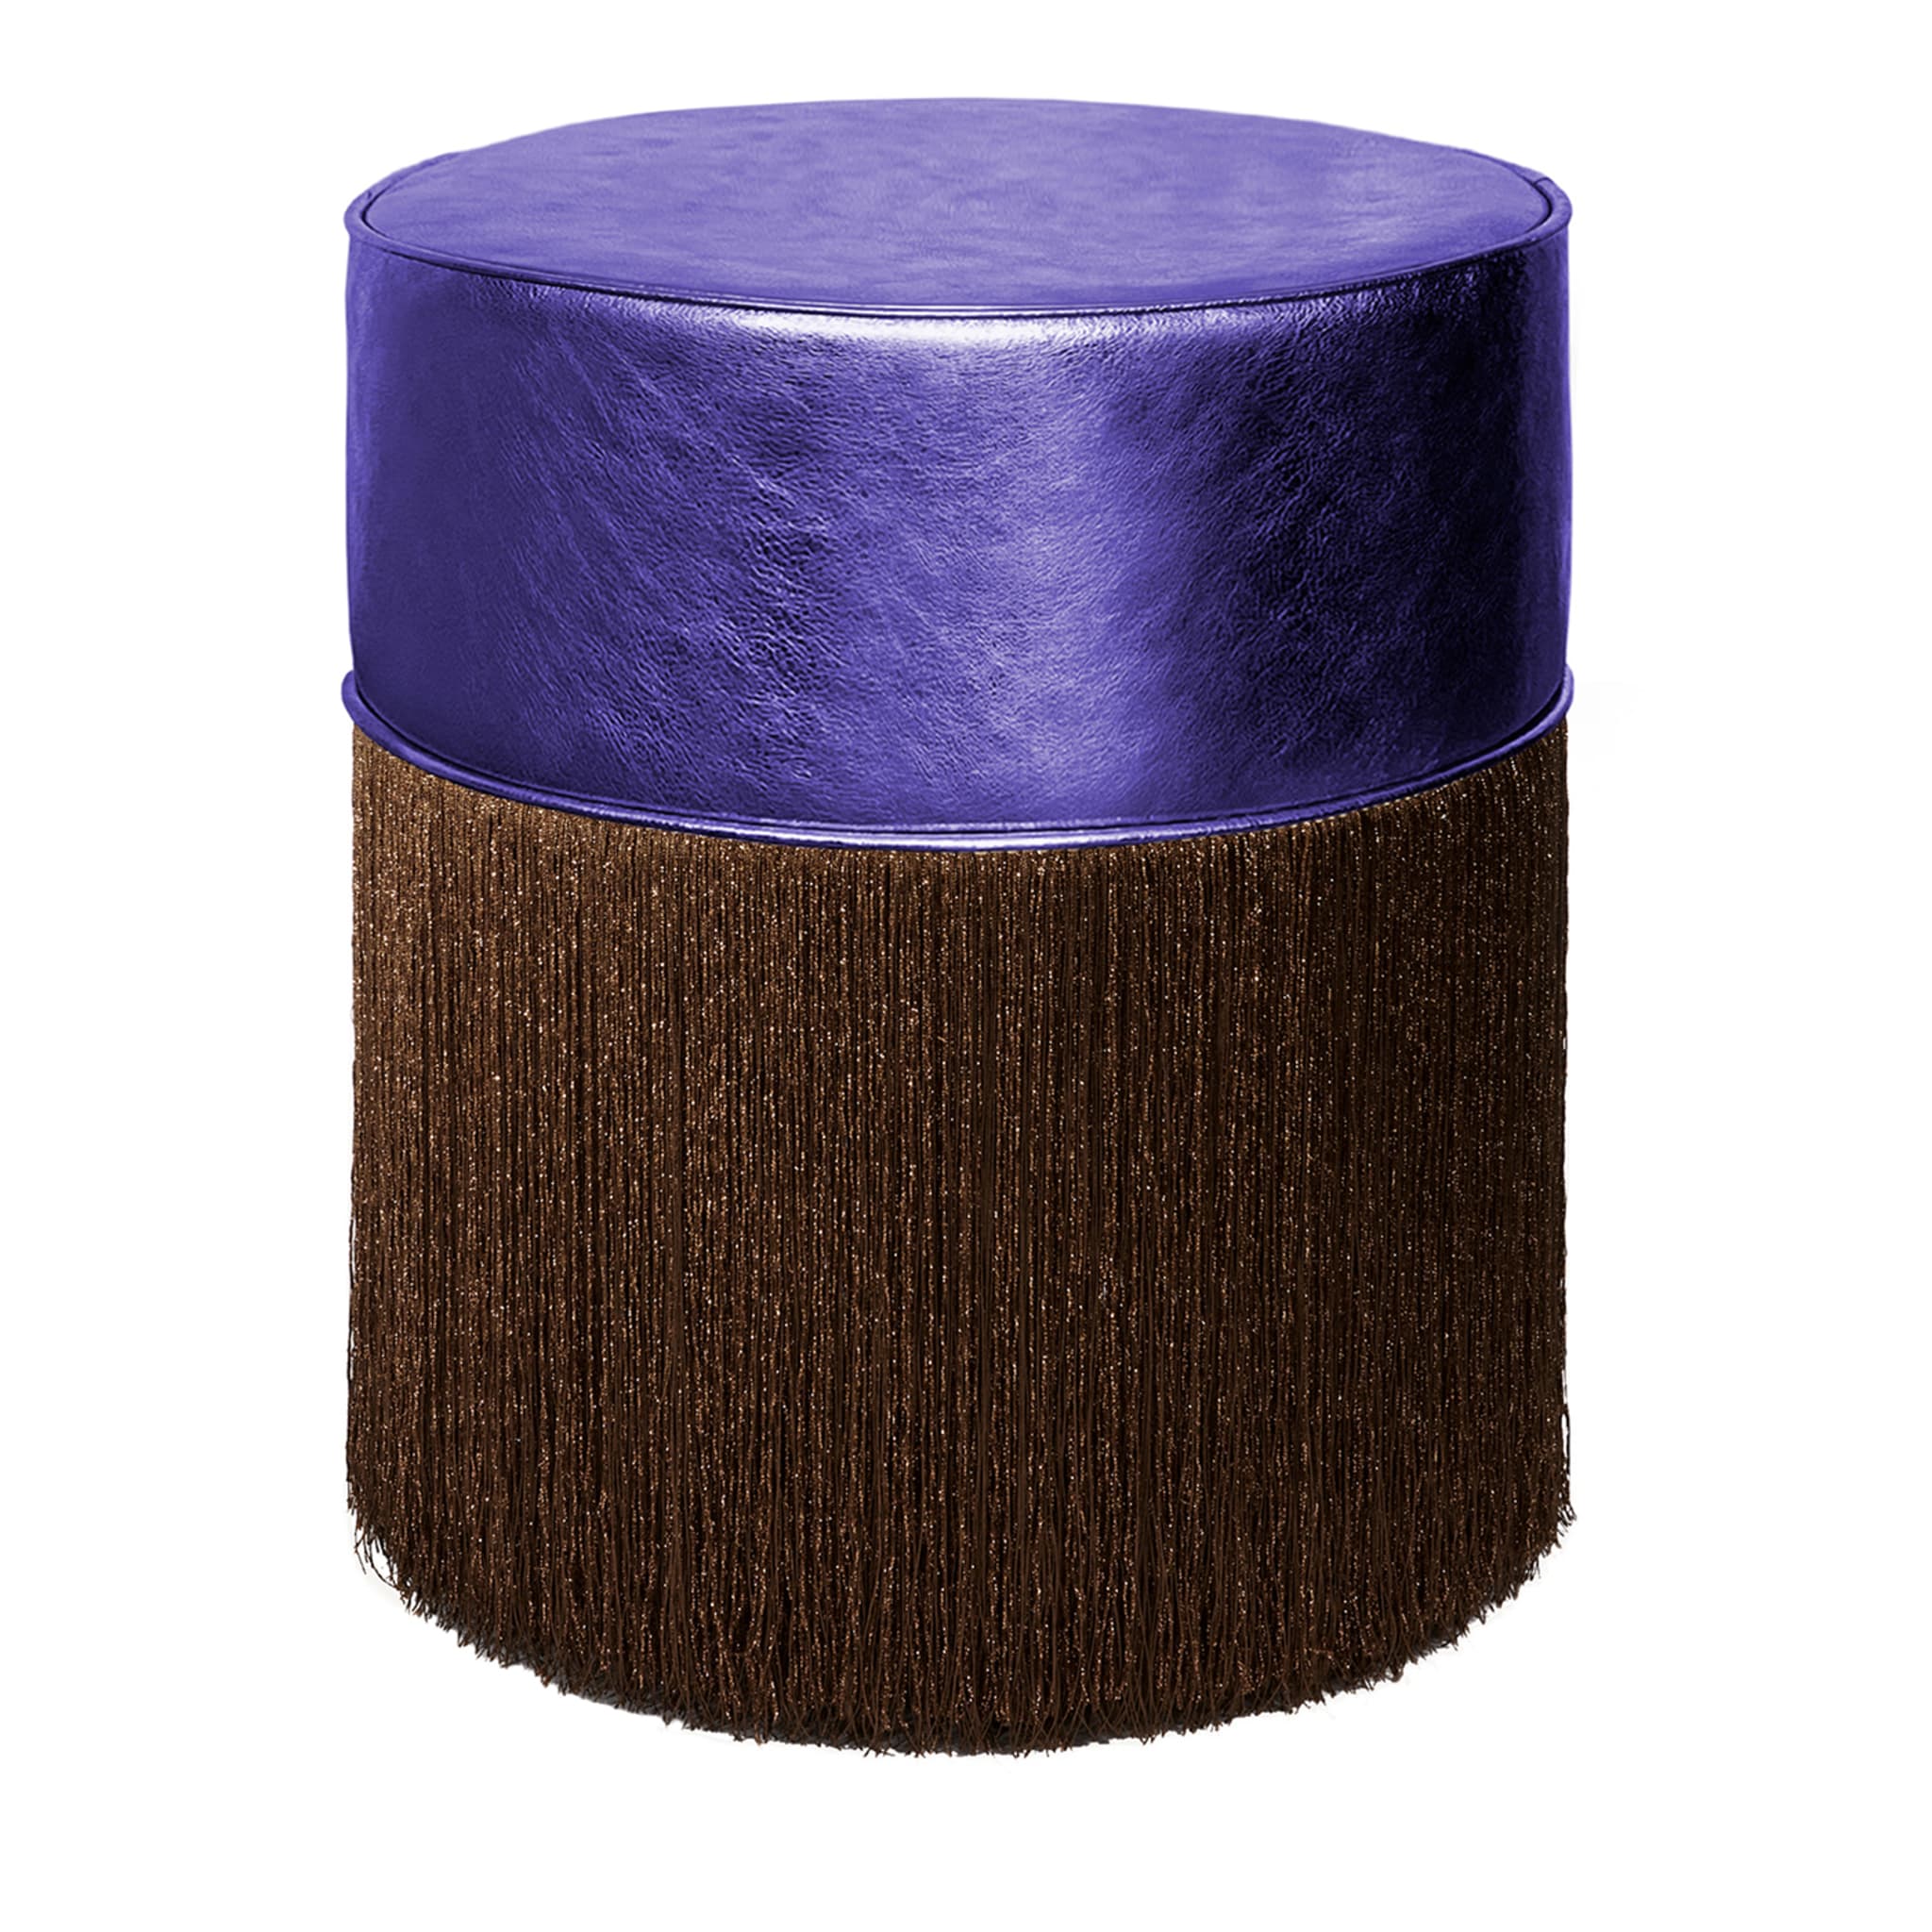 Pouf Gleaming pelle viola metallizzata e frange marroni di Lorenza Bozzoli - Vista principale